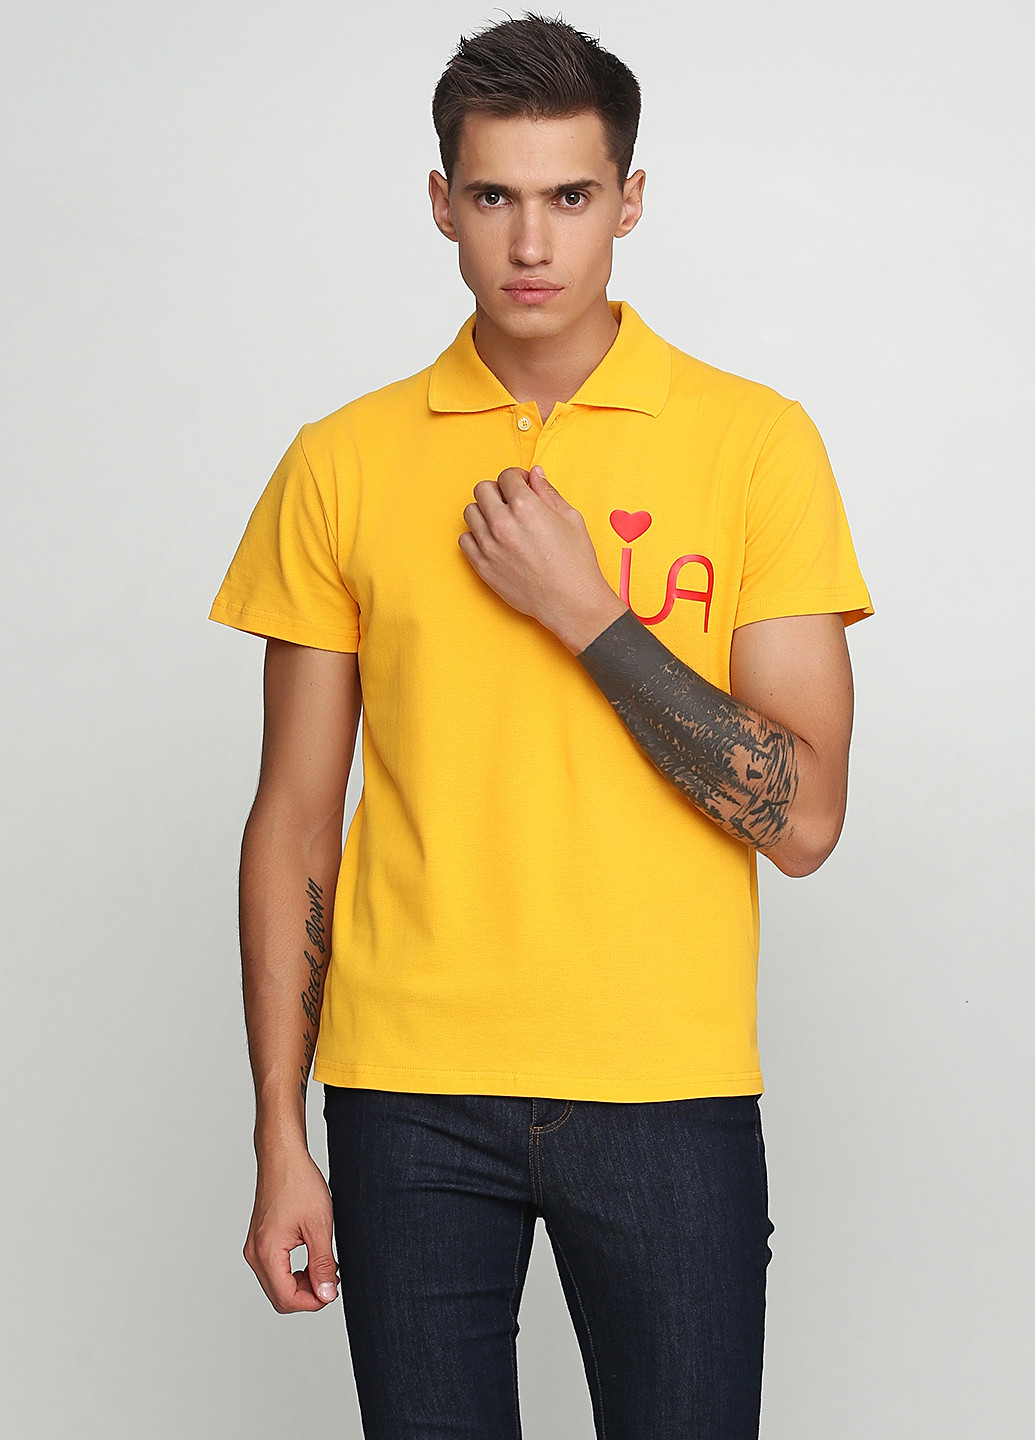 Желтая футболка-поло для мужчин Manatki с рисунком